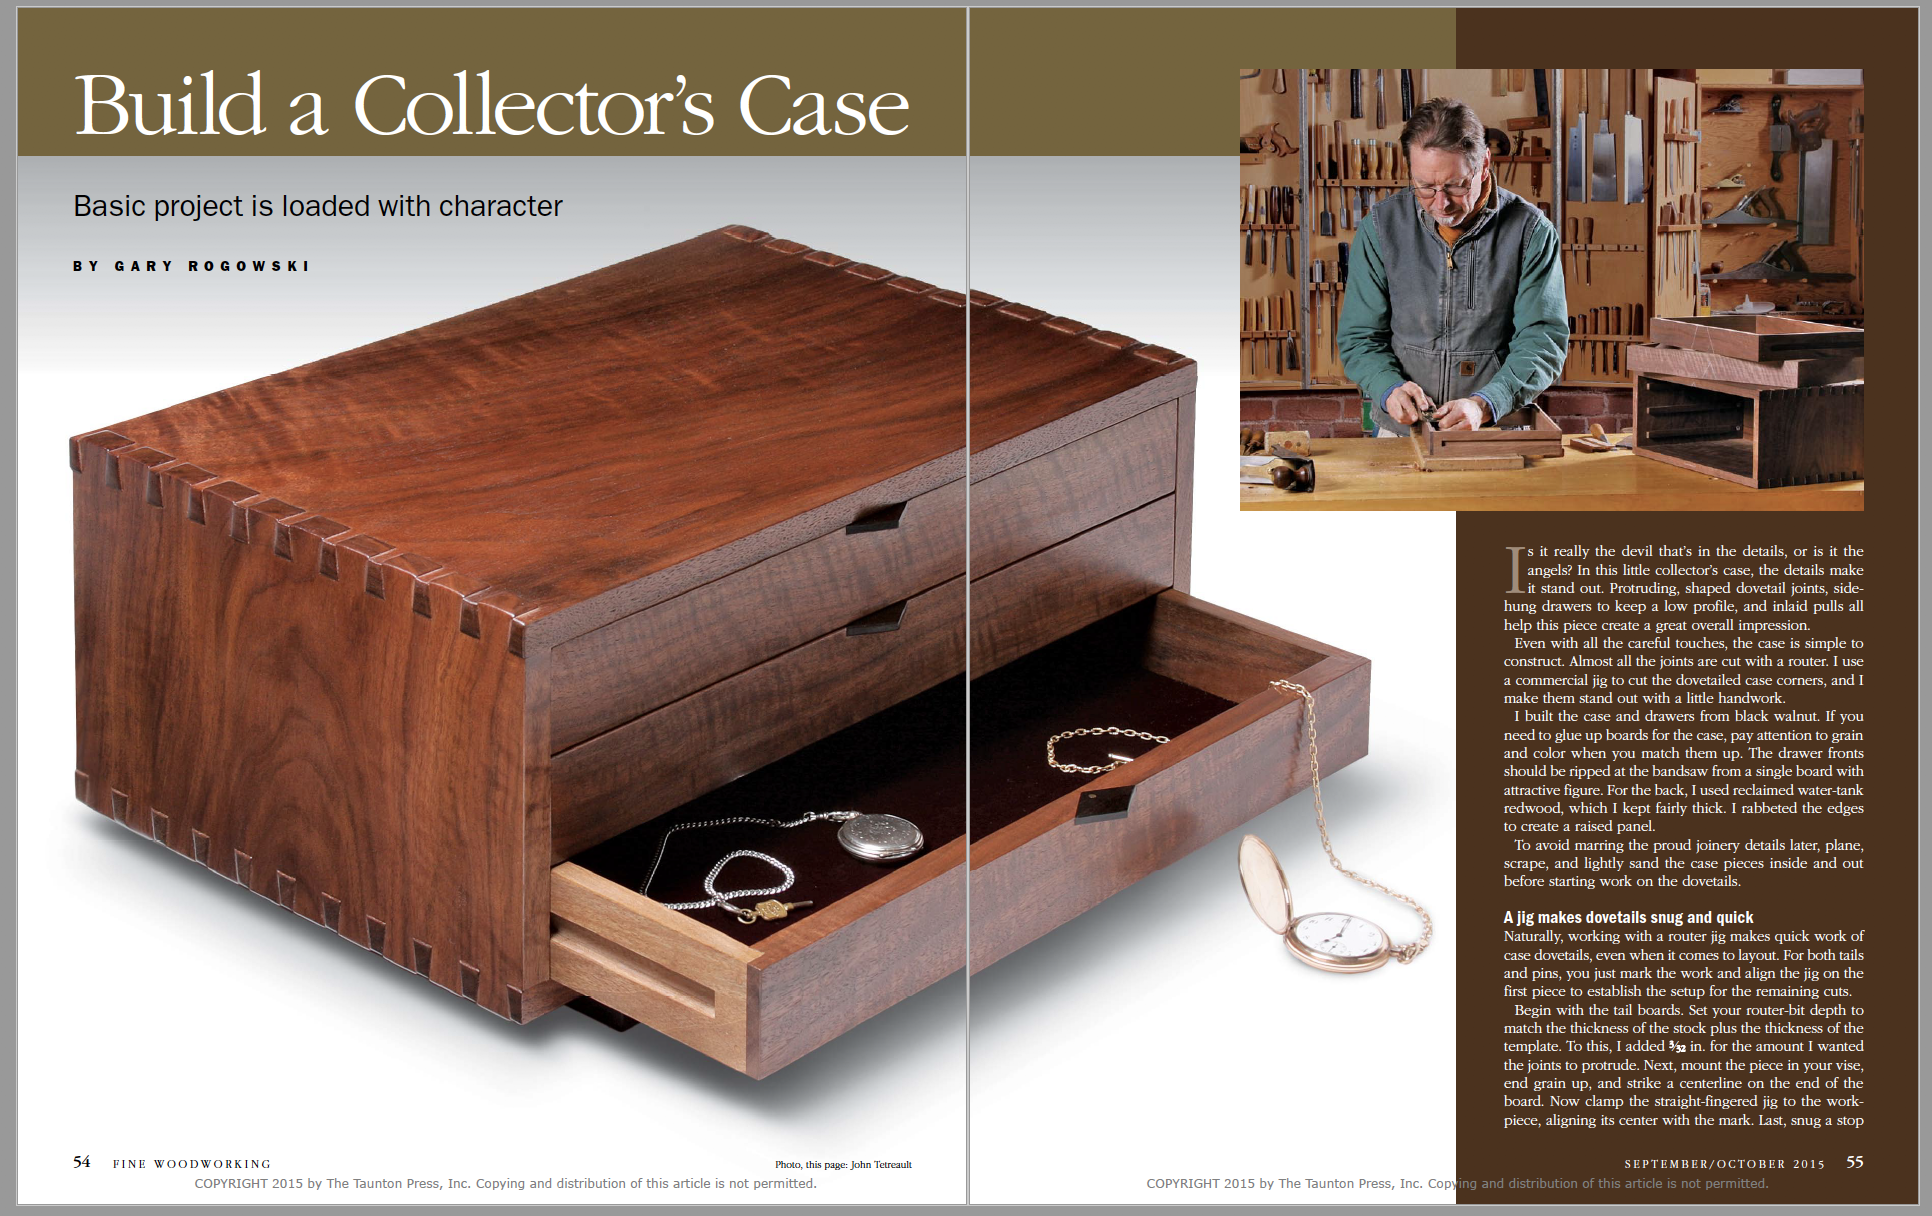 Build a Collector's Case